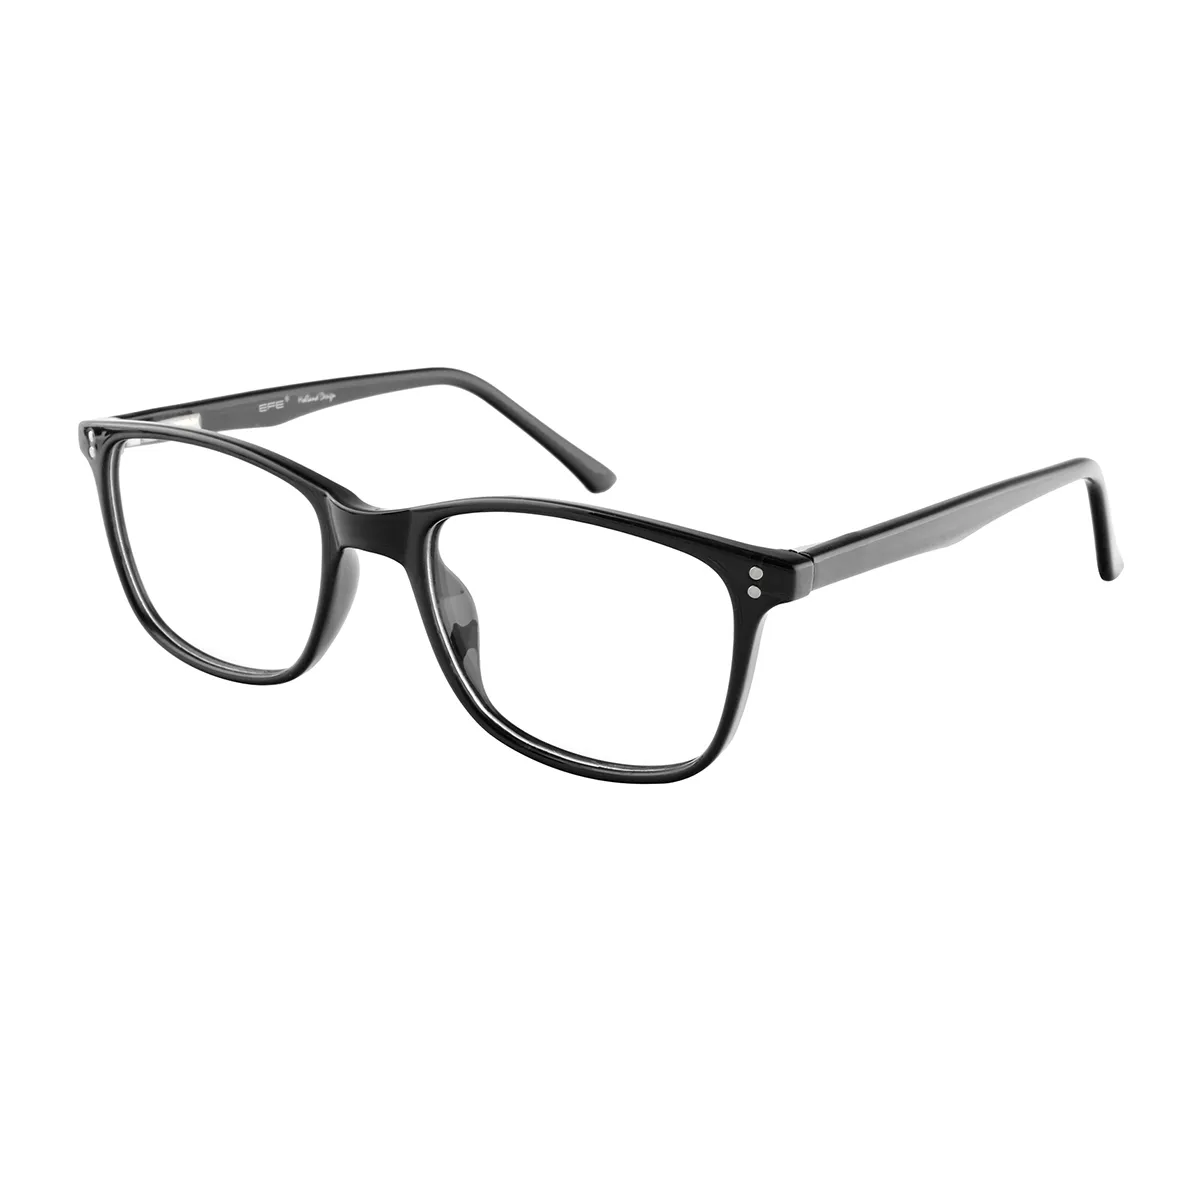 Herron - Square Black Glasses for Men & Women